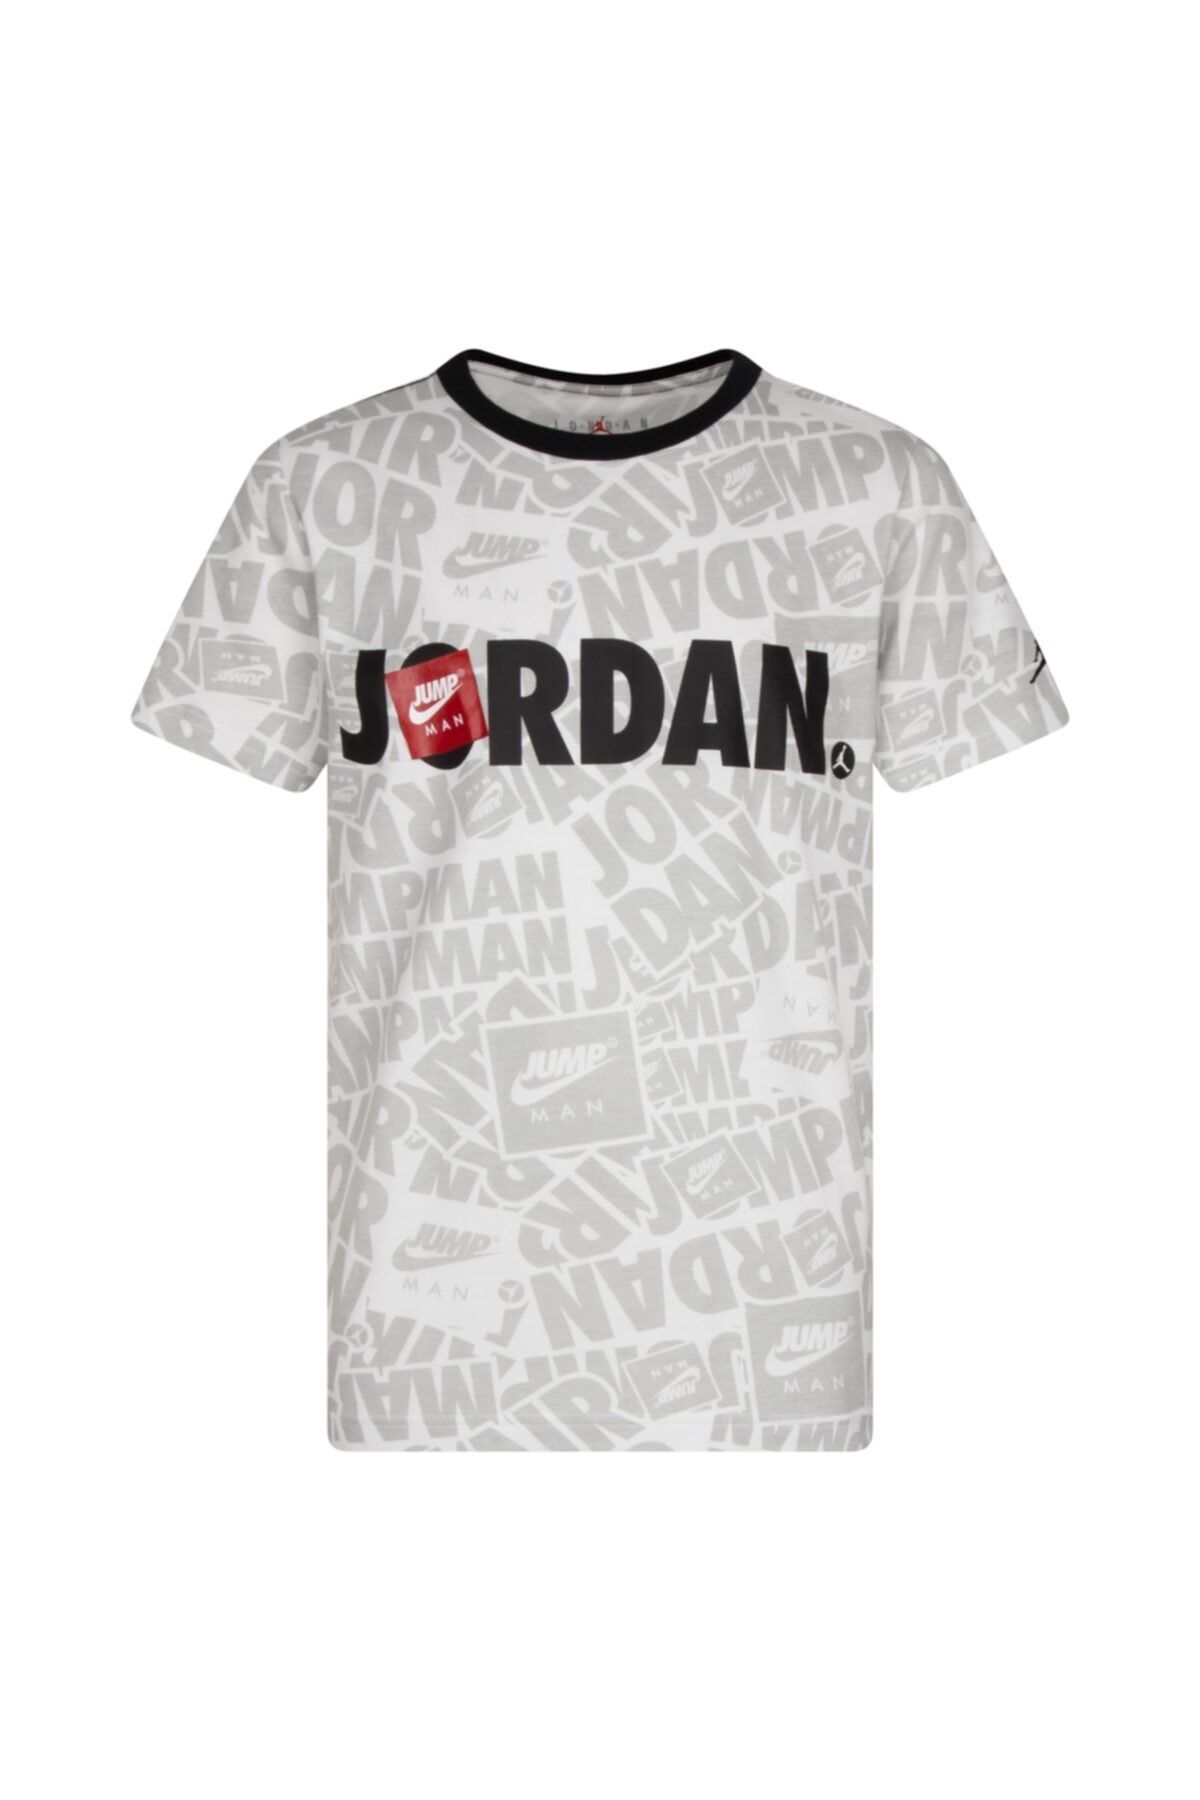 Nike Nıke Jordan Jumpman By Nıke Splash Tee Çocuk T-shirt